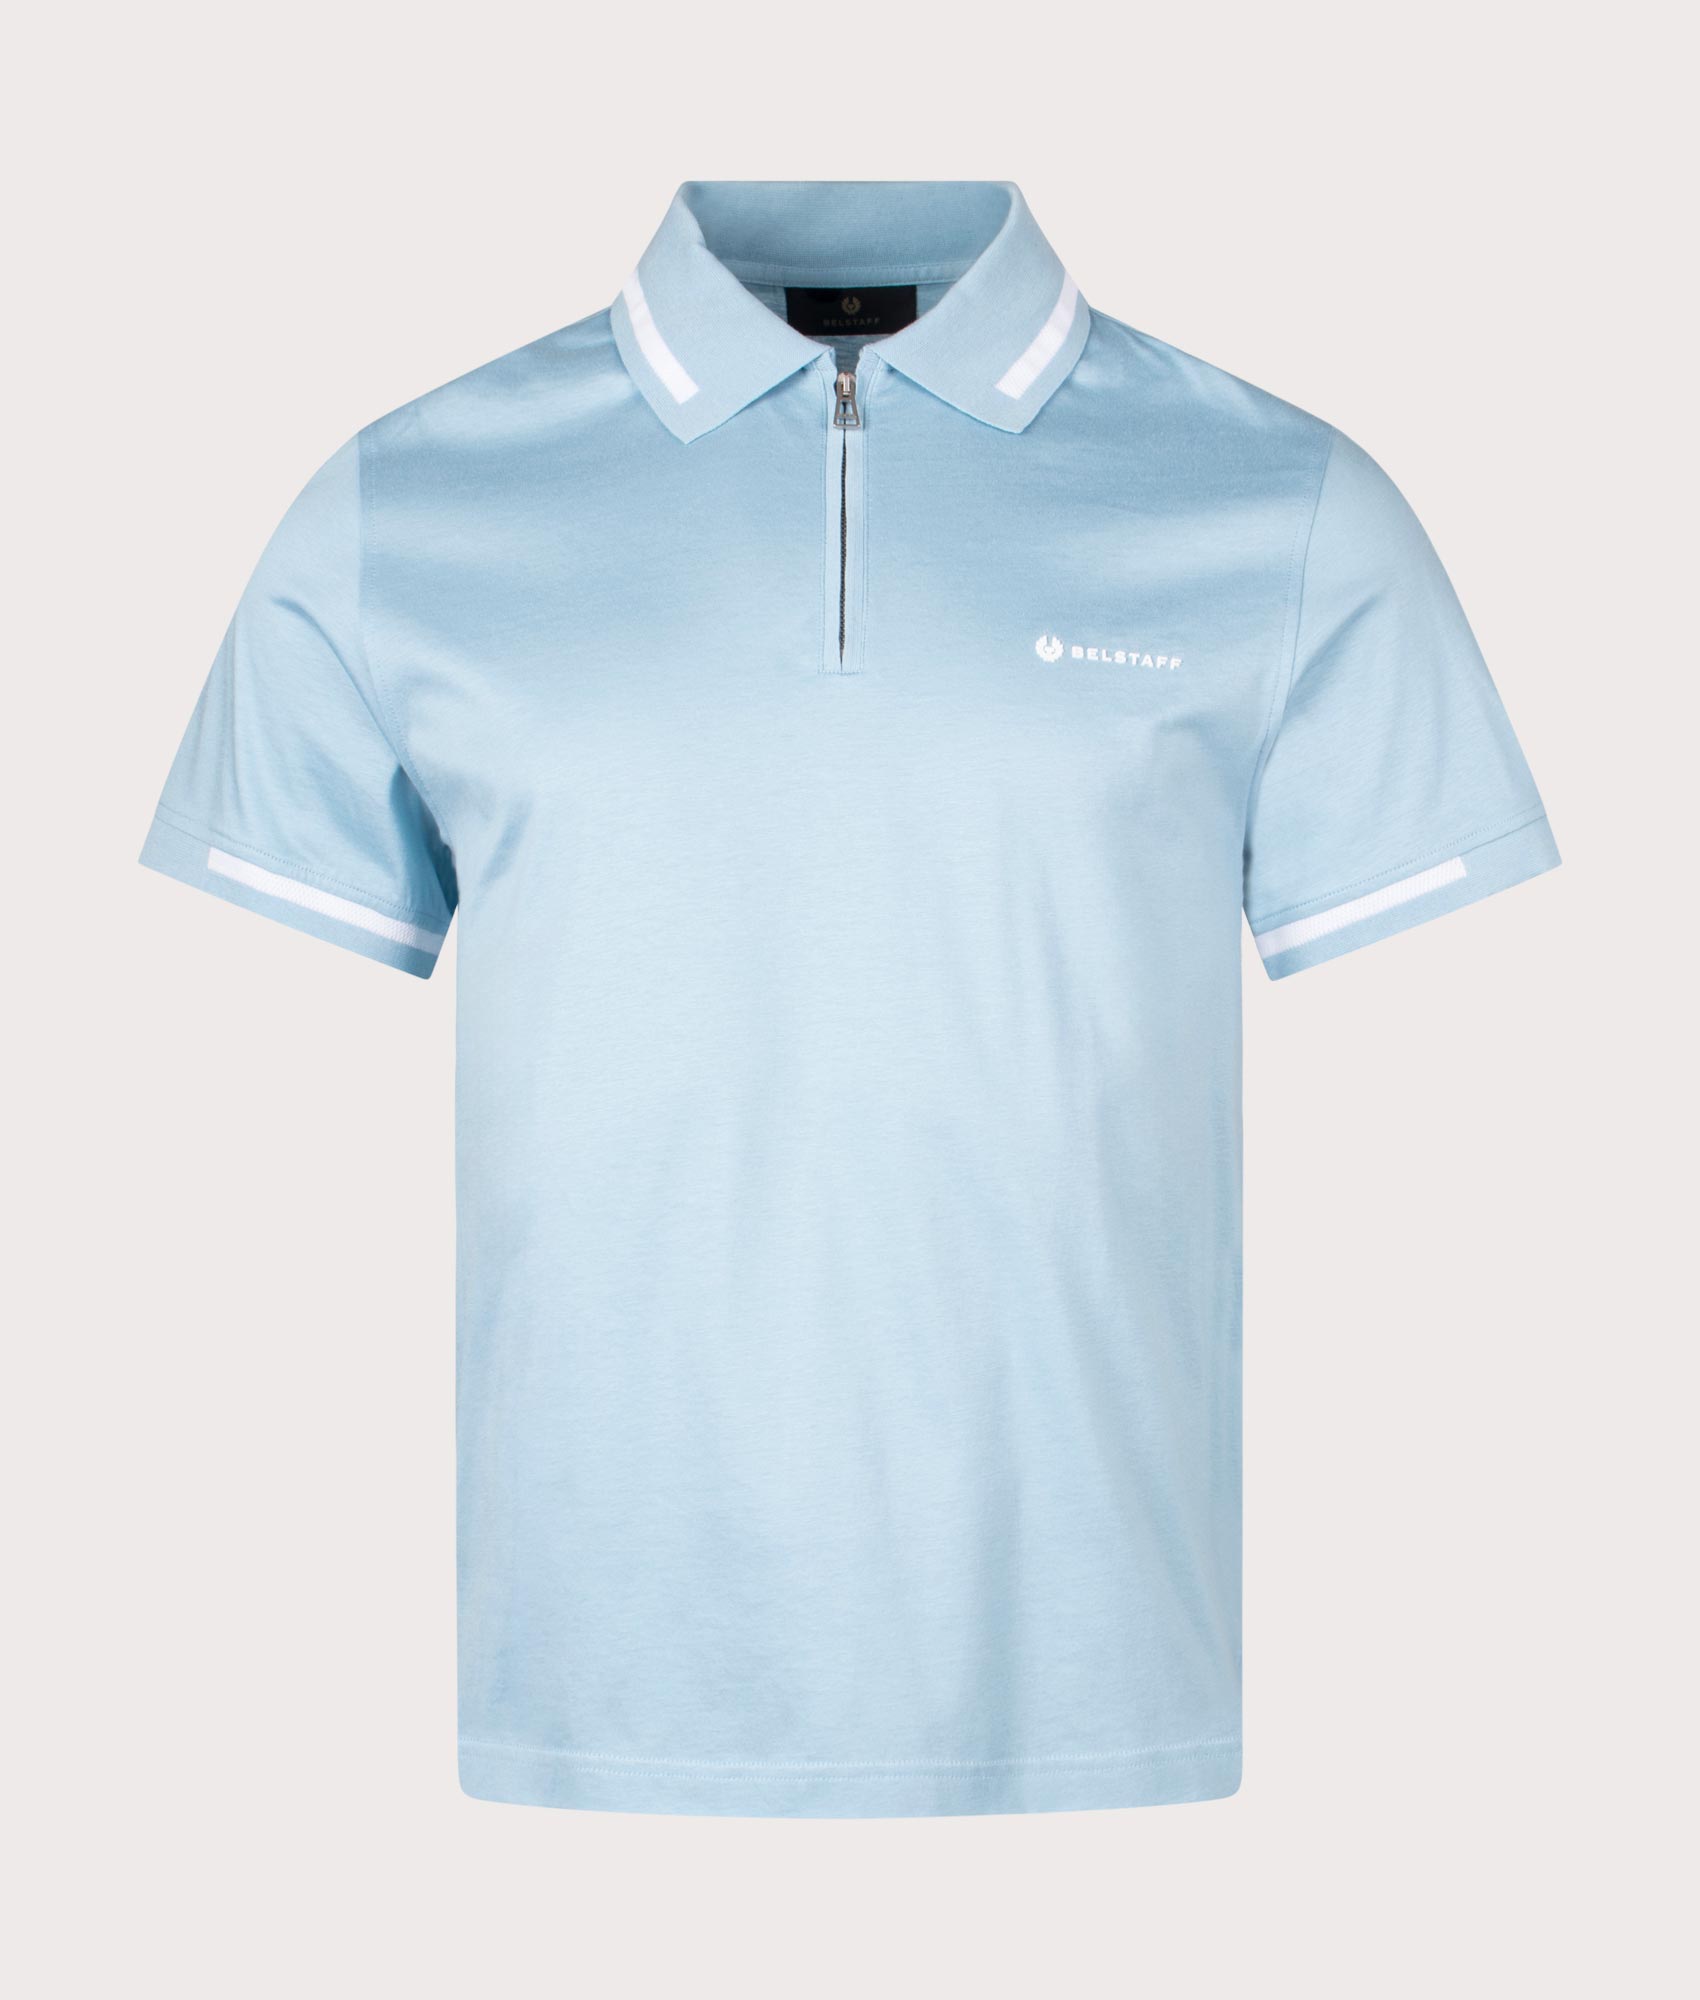 Belstaff Mens Graph Zip Polo Shirt - Colour: Skyline Blue - Size: Medium